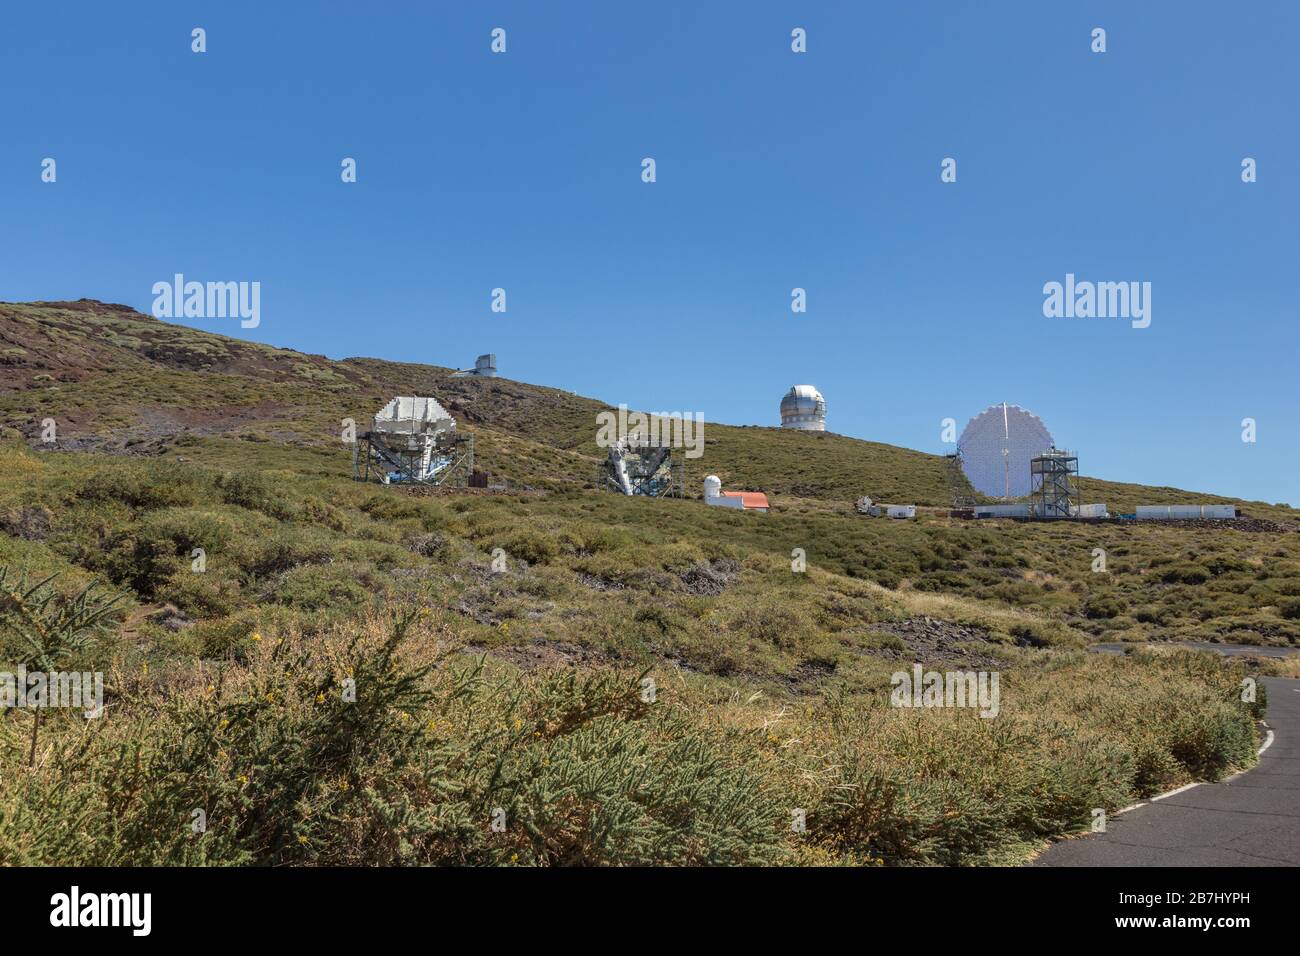 L'Observatoire Roque de los Muchachos est un observatoire astronomique situé sur l'île de la Palma, dans les îles Canaries. Observatoire de Caldera de T Banque D'Images